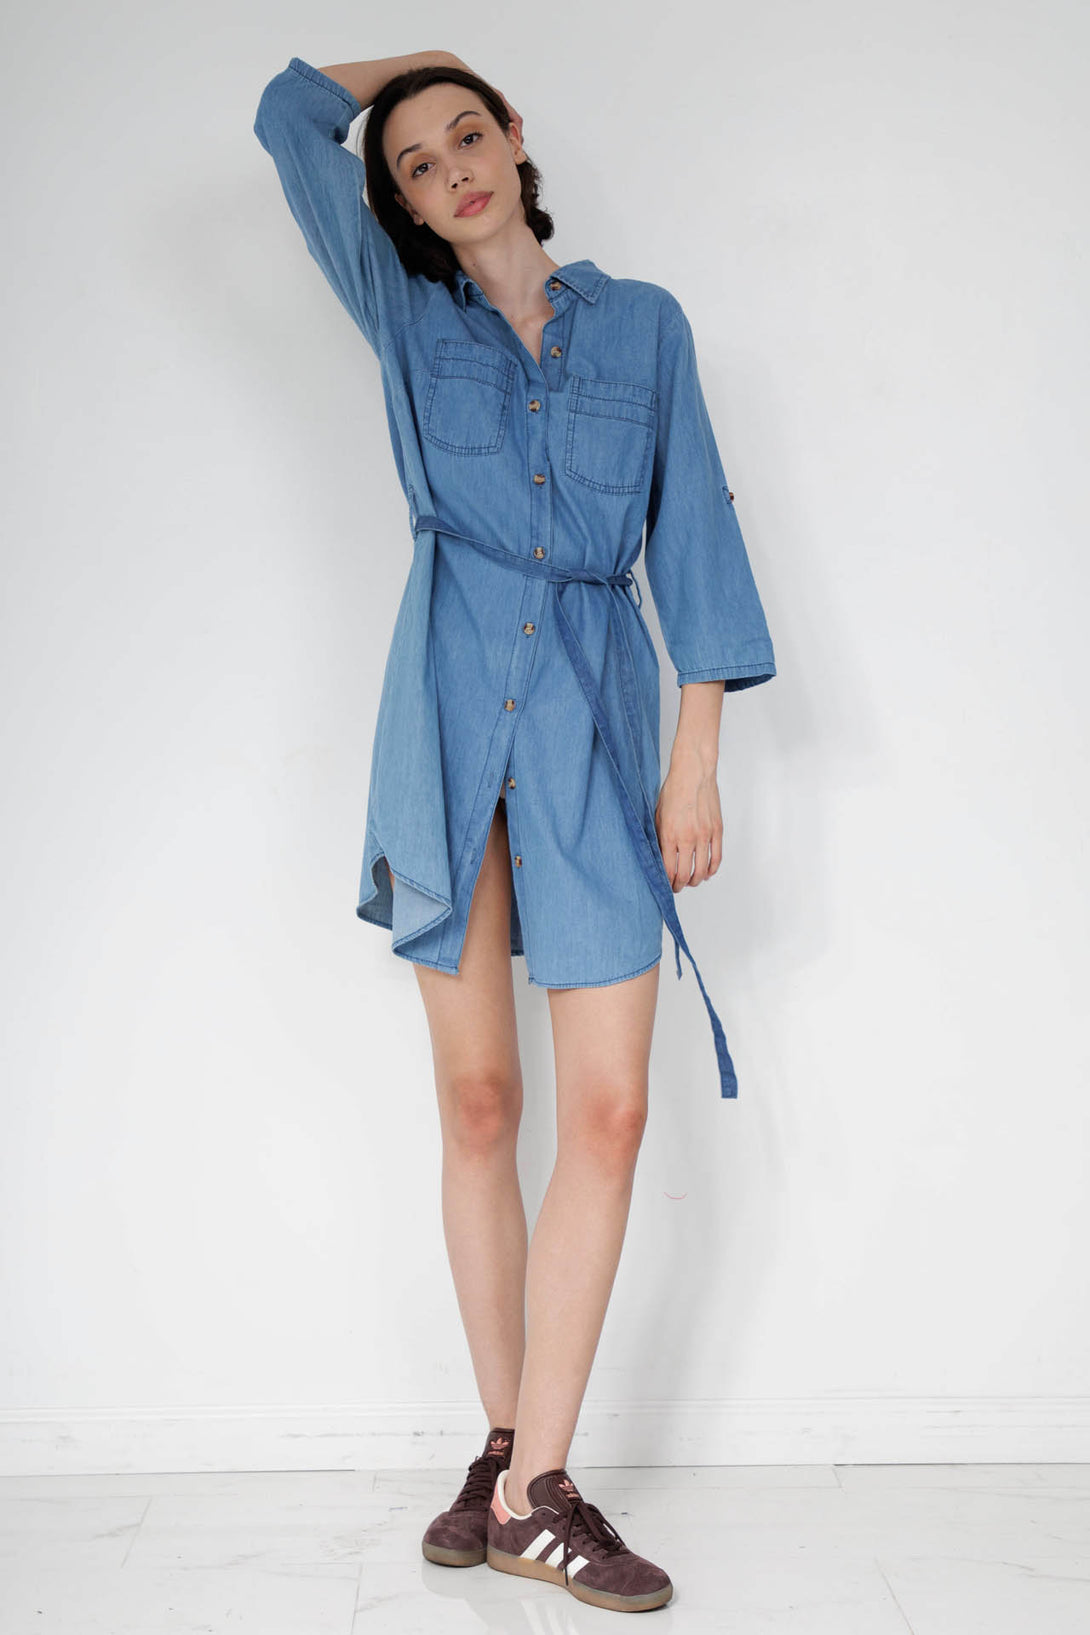 denim button dress, jeans shirt dress, HT 360 Collective, blue denim shirt dress,